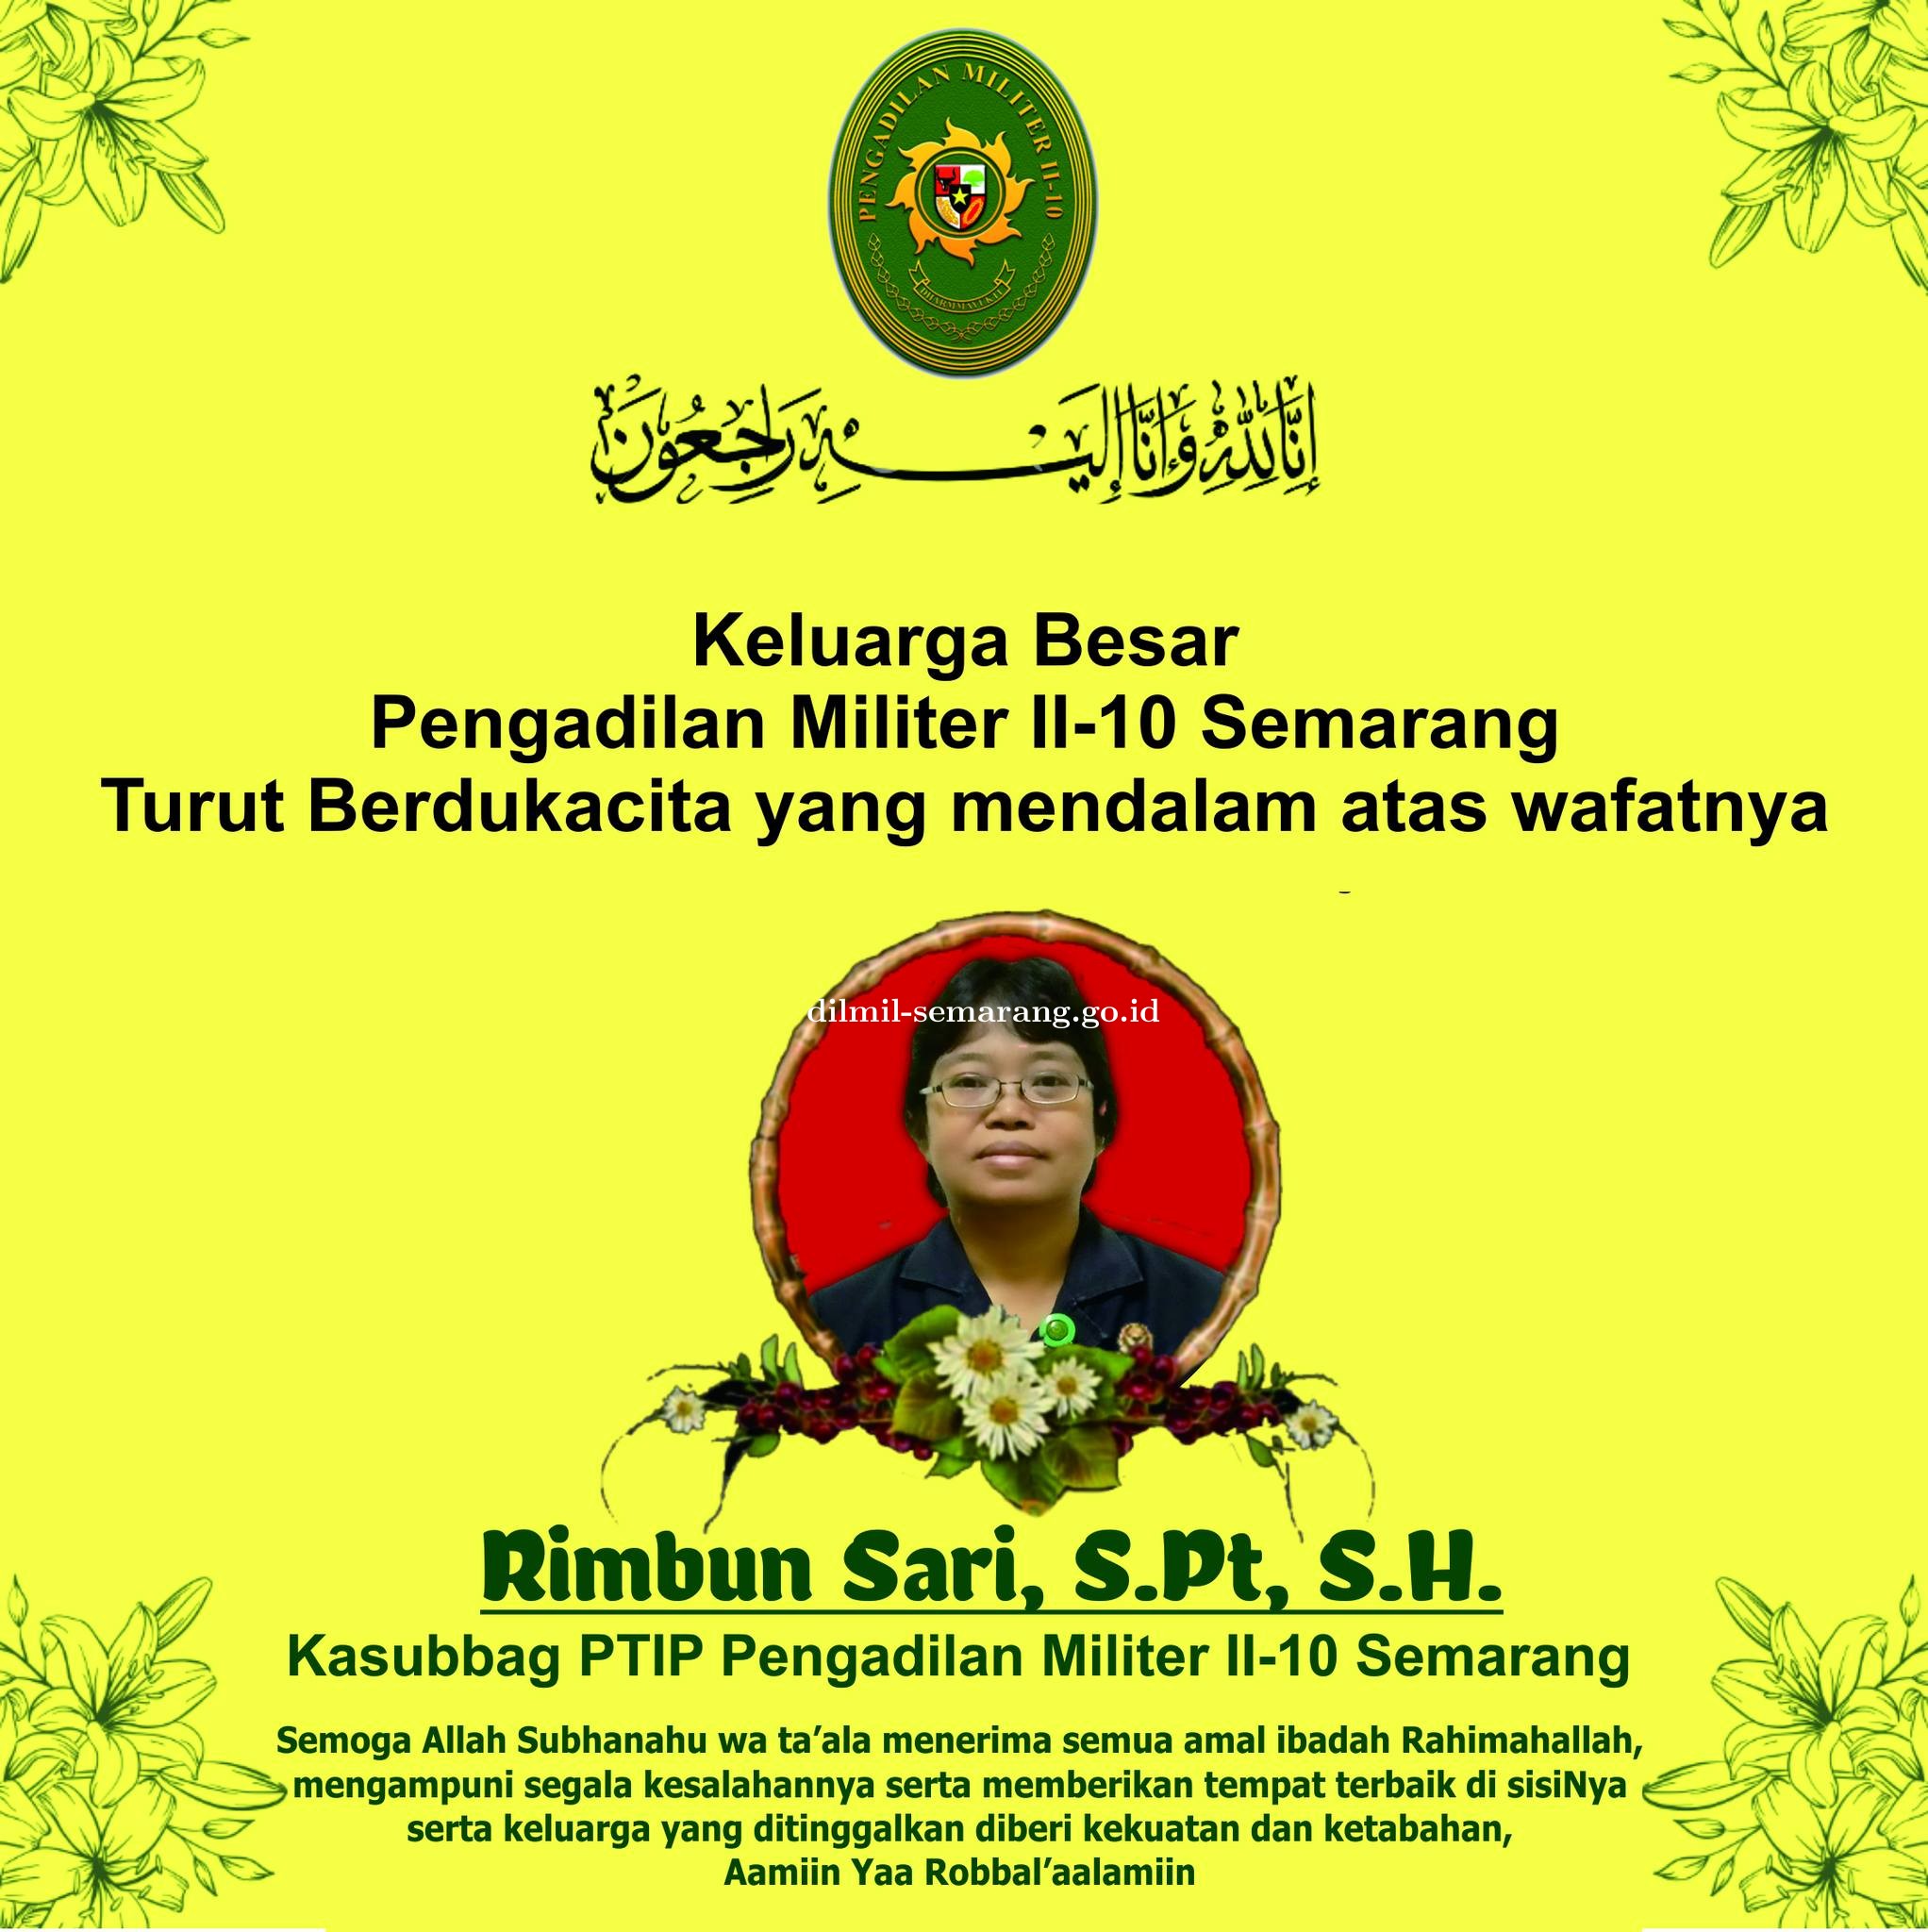 Pengadilan Militer II-10 Semarang turut berdukacita atas wafatnya ASN Rimbun Sari, S.Pt, S.H.